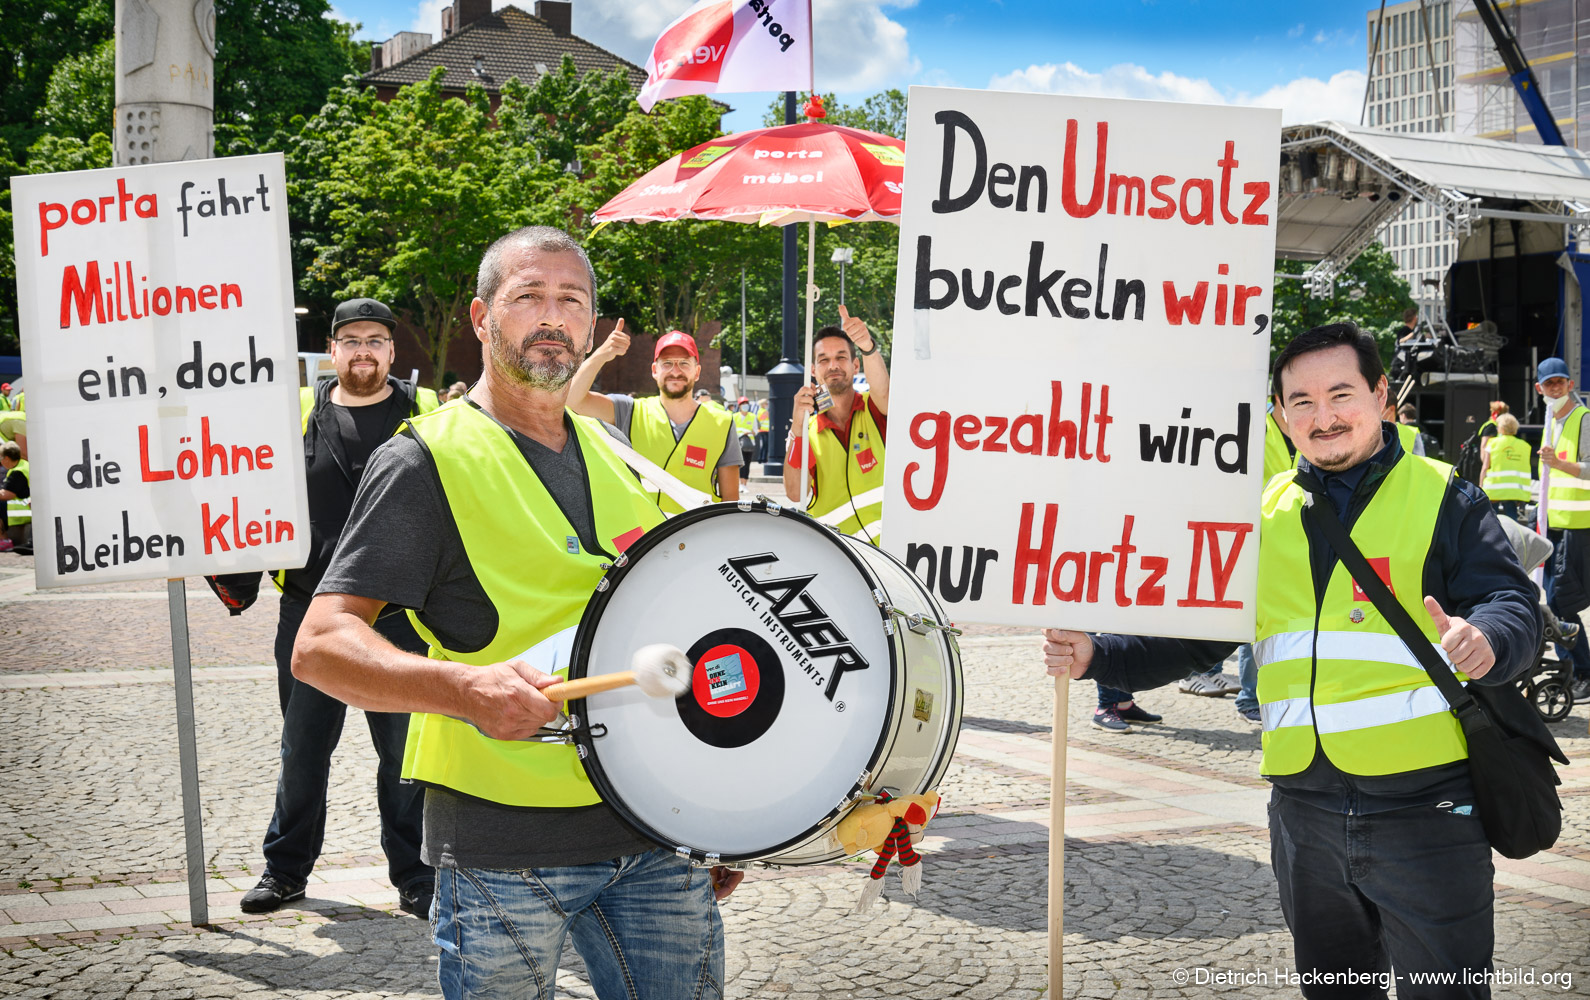 ver.di Handel NRW - zentrale Streikveranstaltung auf dem Friedensplatz in Dortmund am 07.07.2021. Foto Dietrich Hackenberg